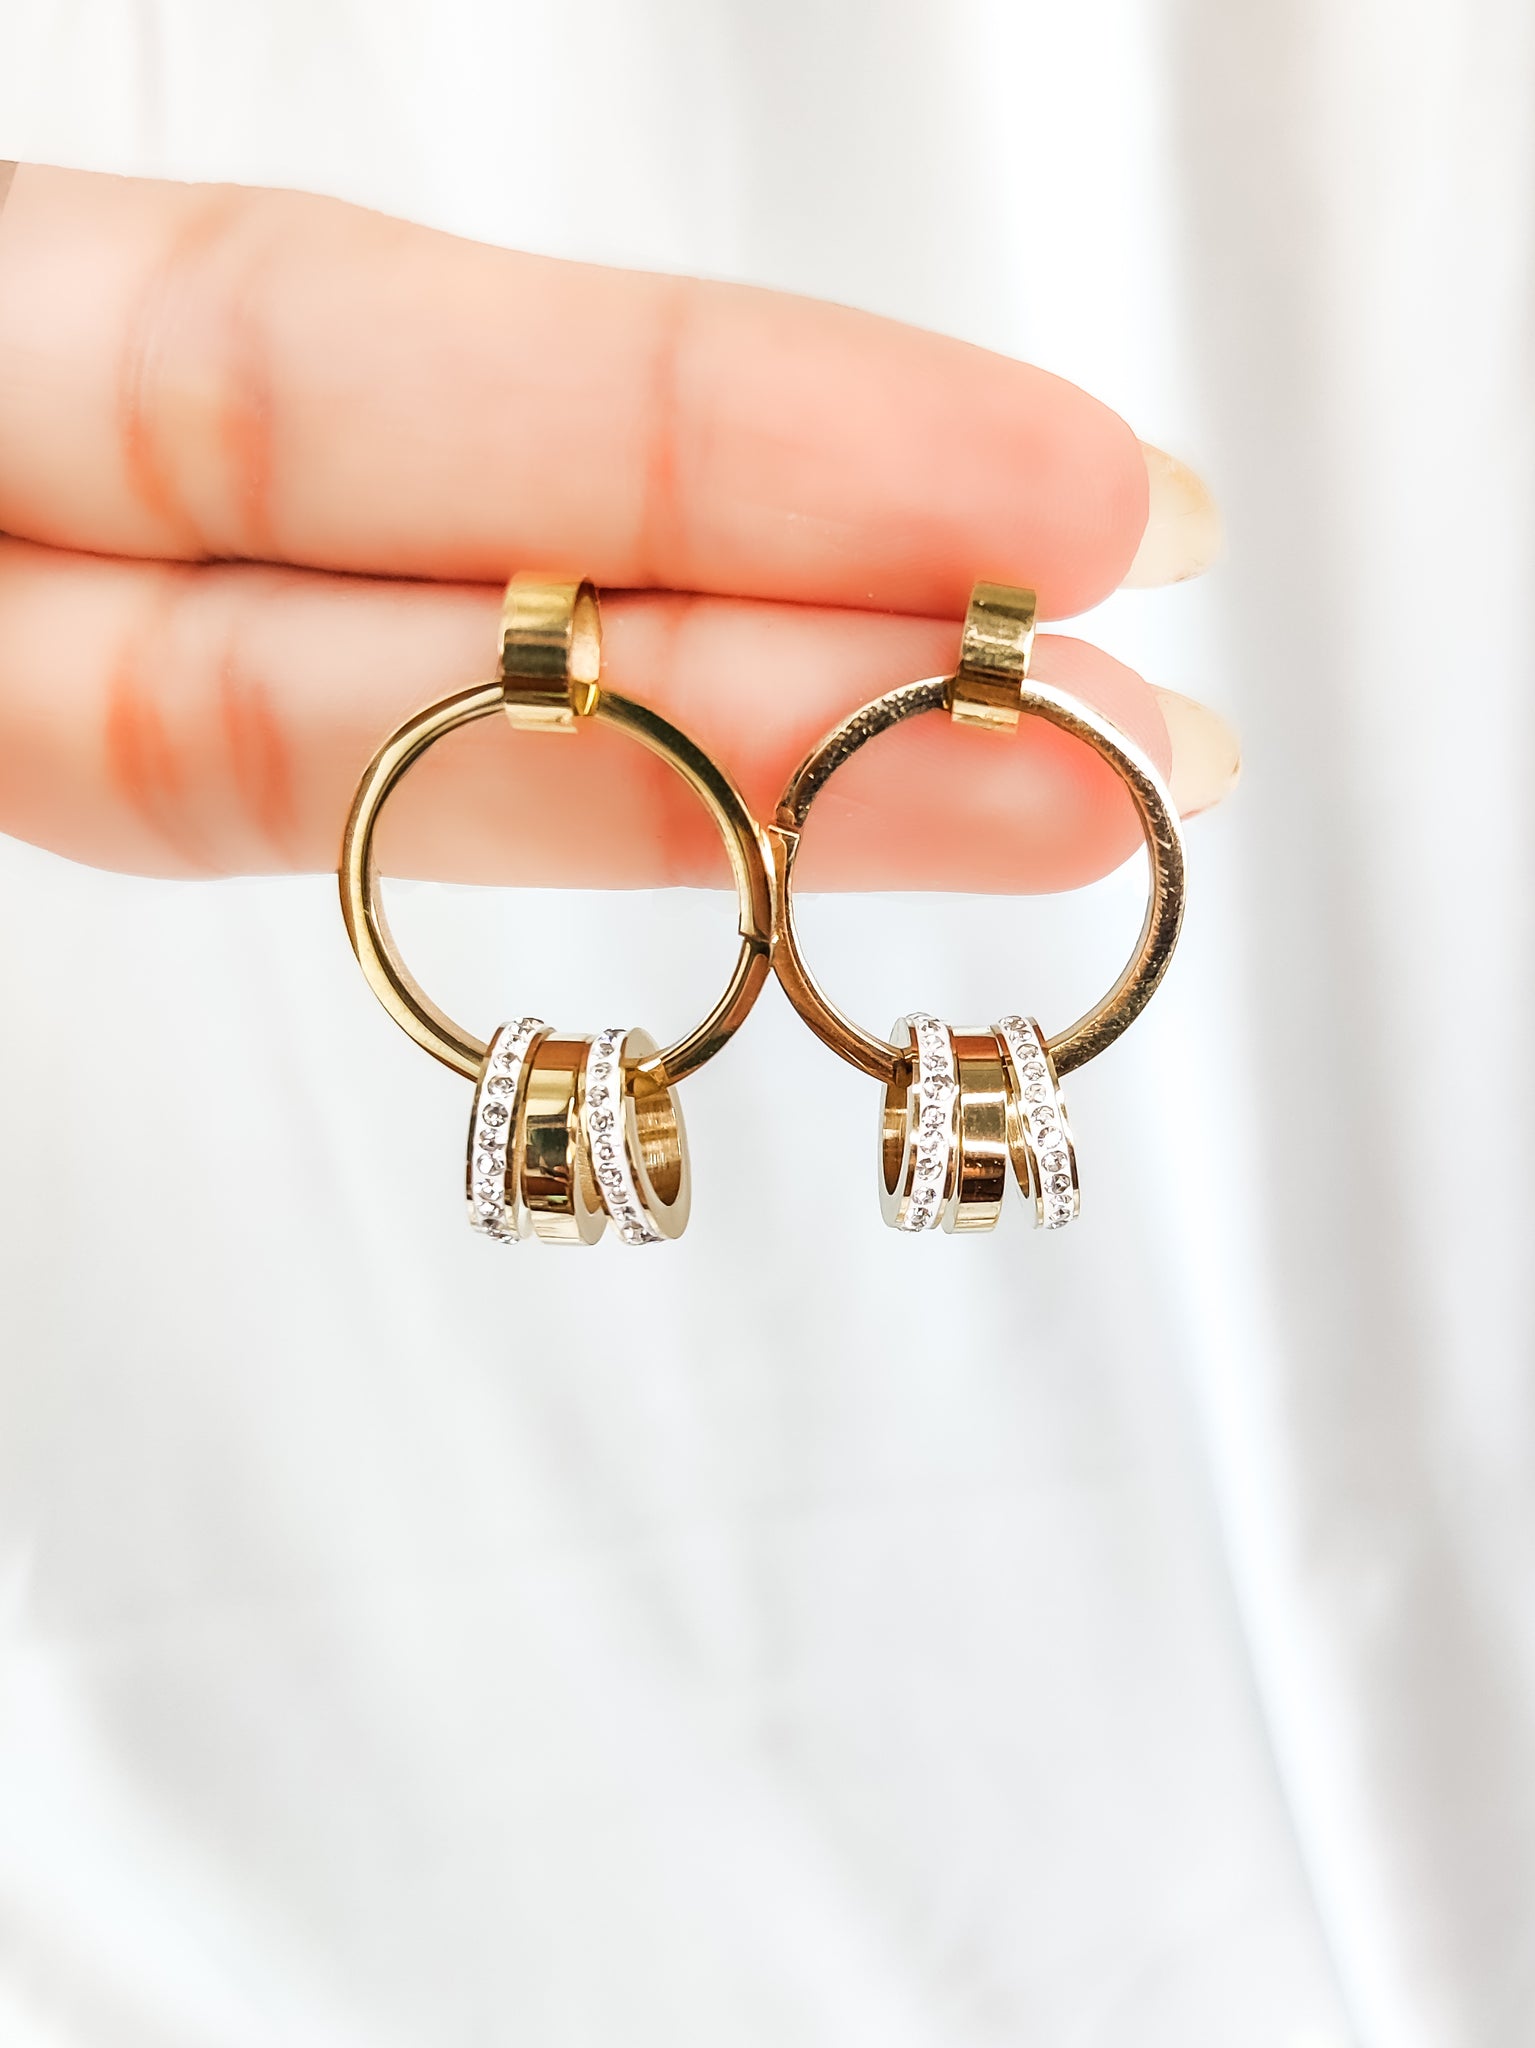 Handcrafted dainty drop earrings